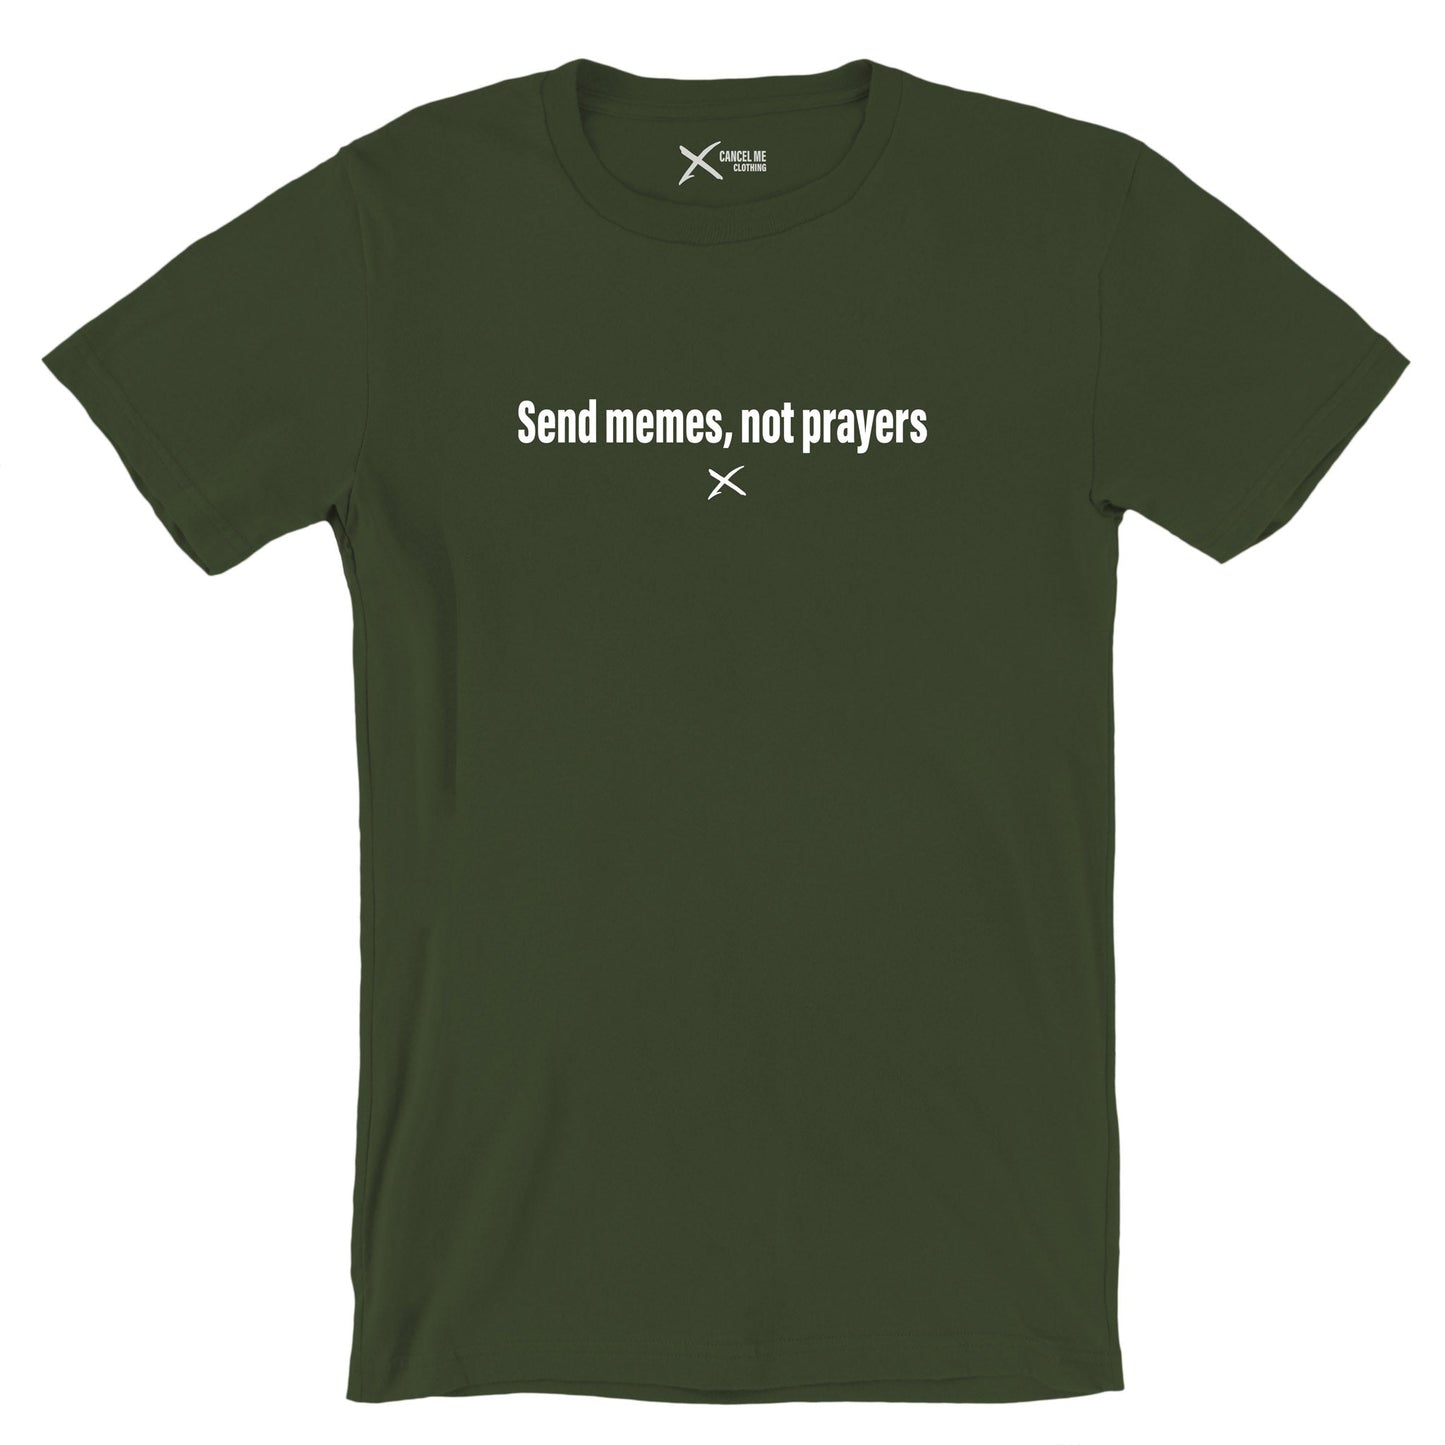 Send memes, not prayers - Shirt